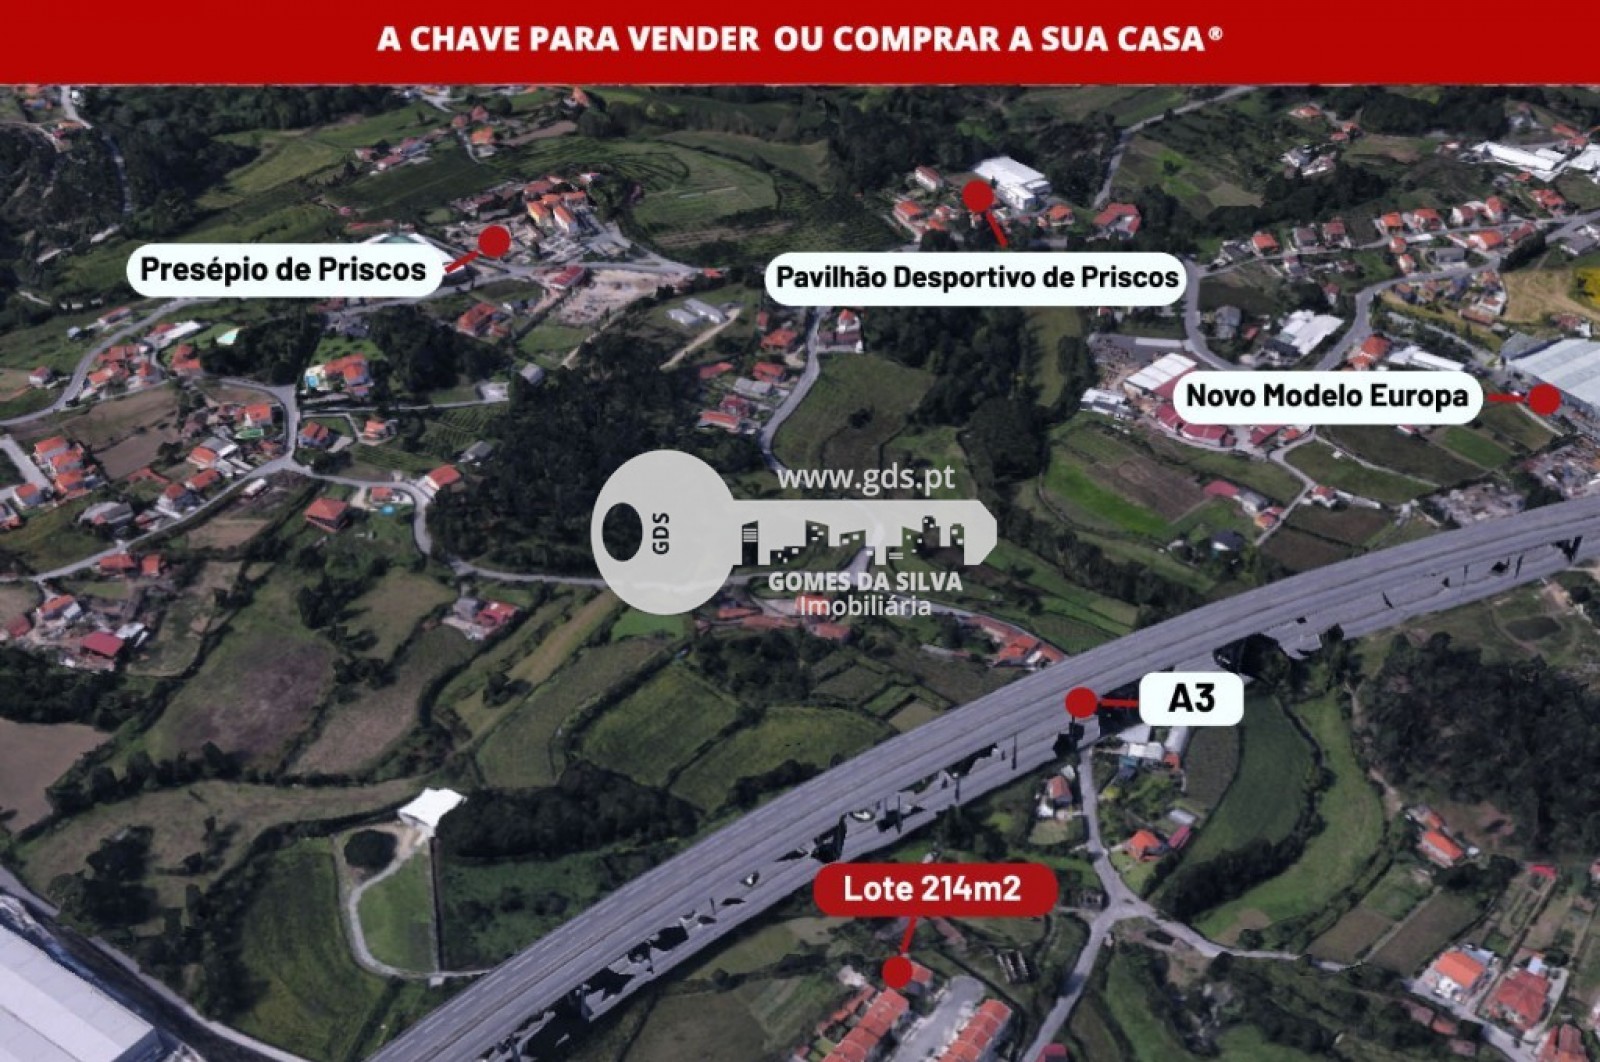 Terreno para Venda em Priscos, Braga, Braga - Imagem 4